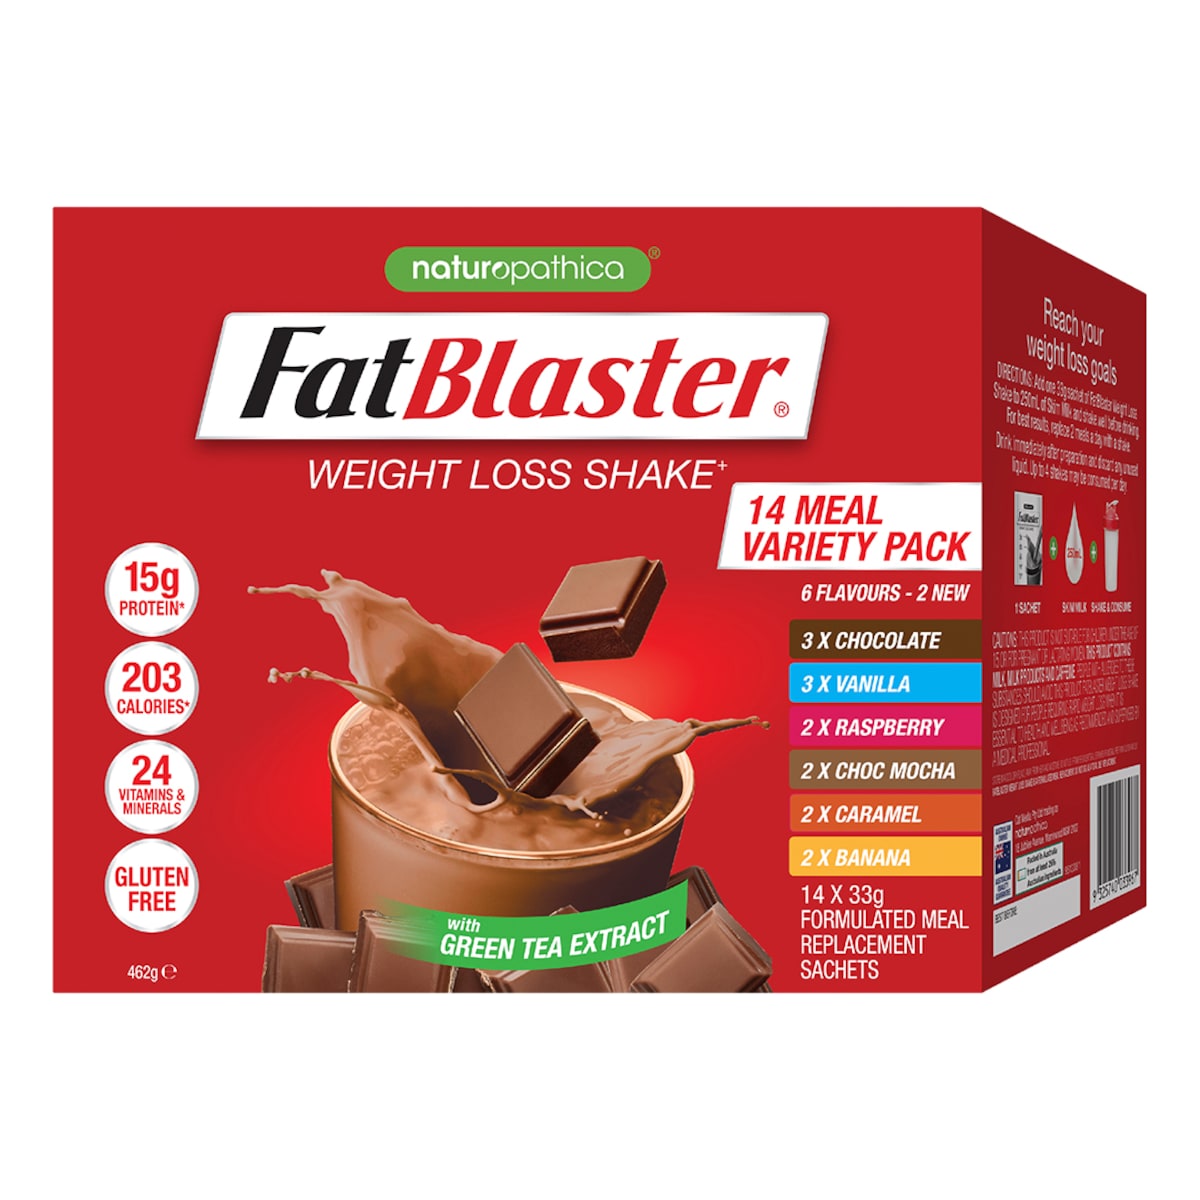 Naturopathica FatBlaster Weight Loss Shake Variety Pack 14 x 33g Sachets